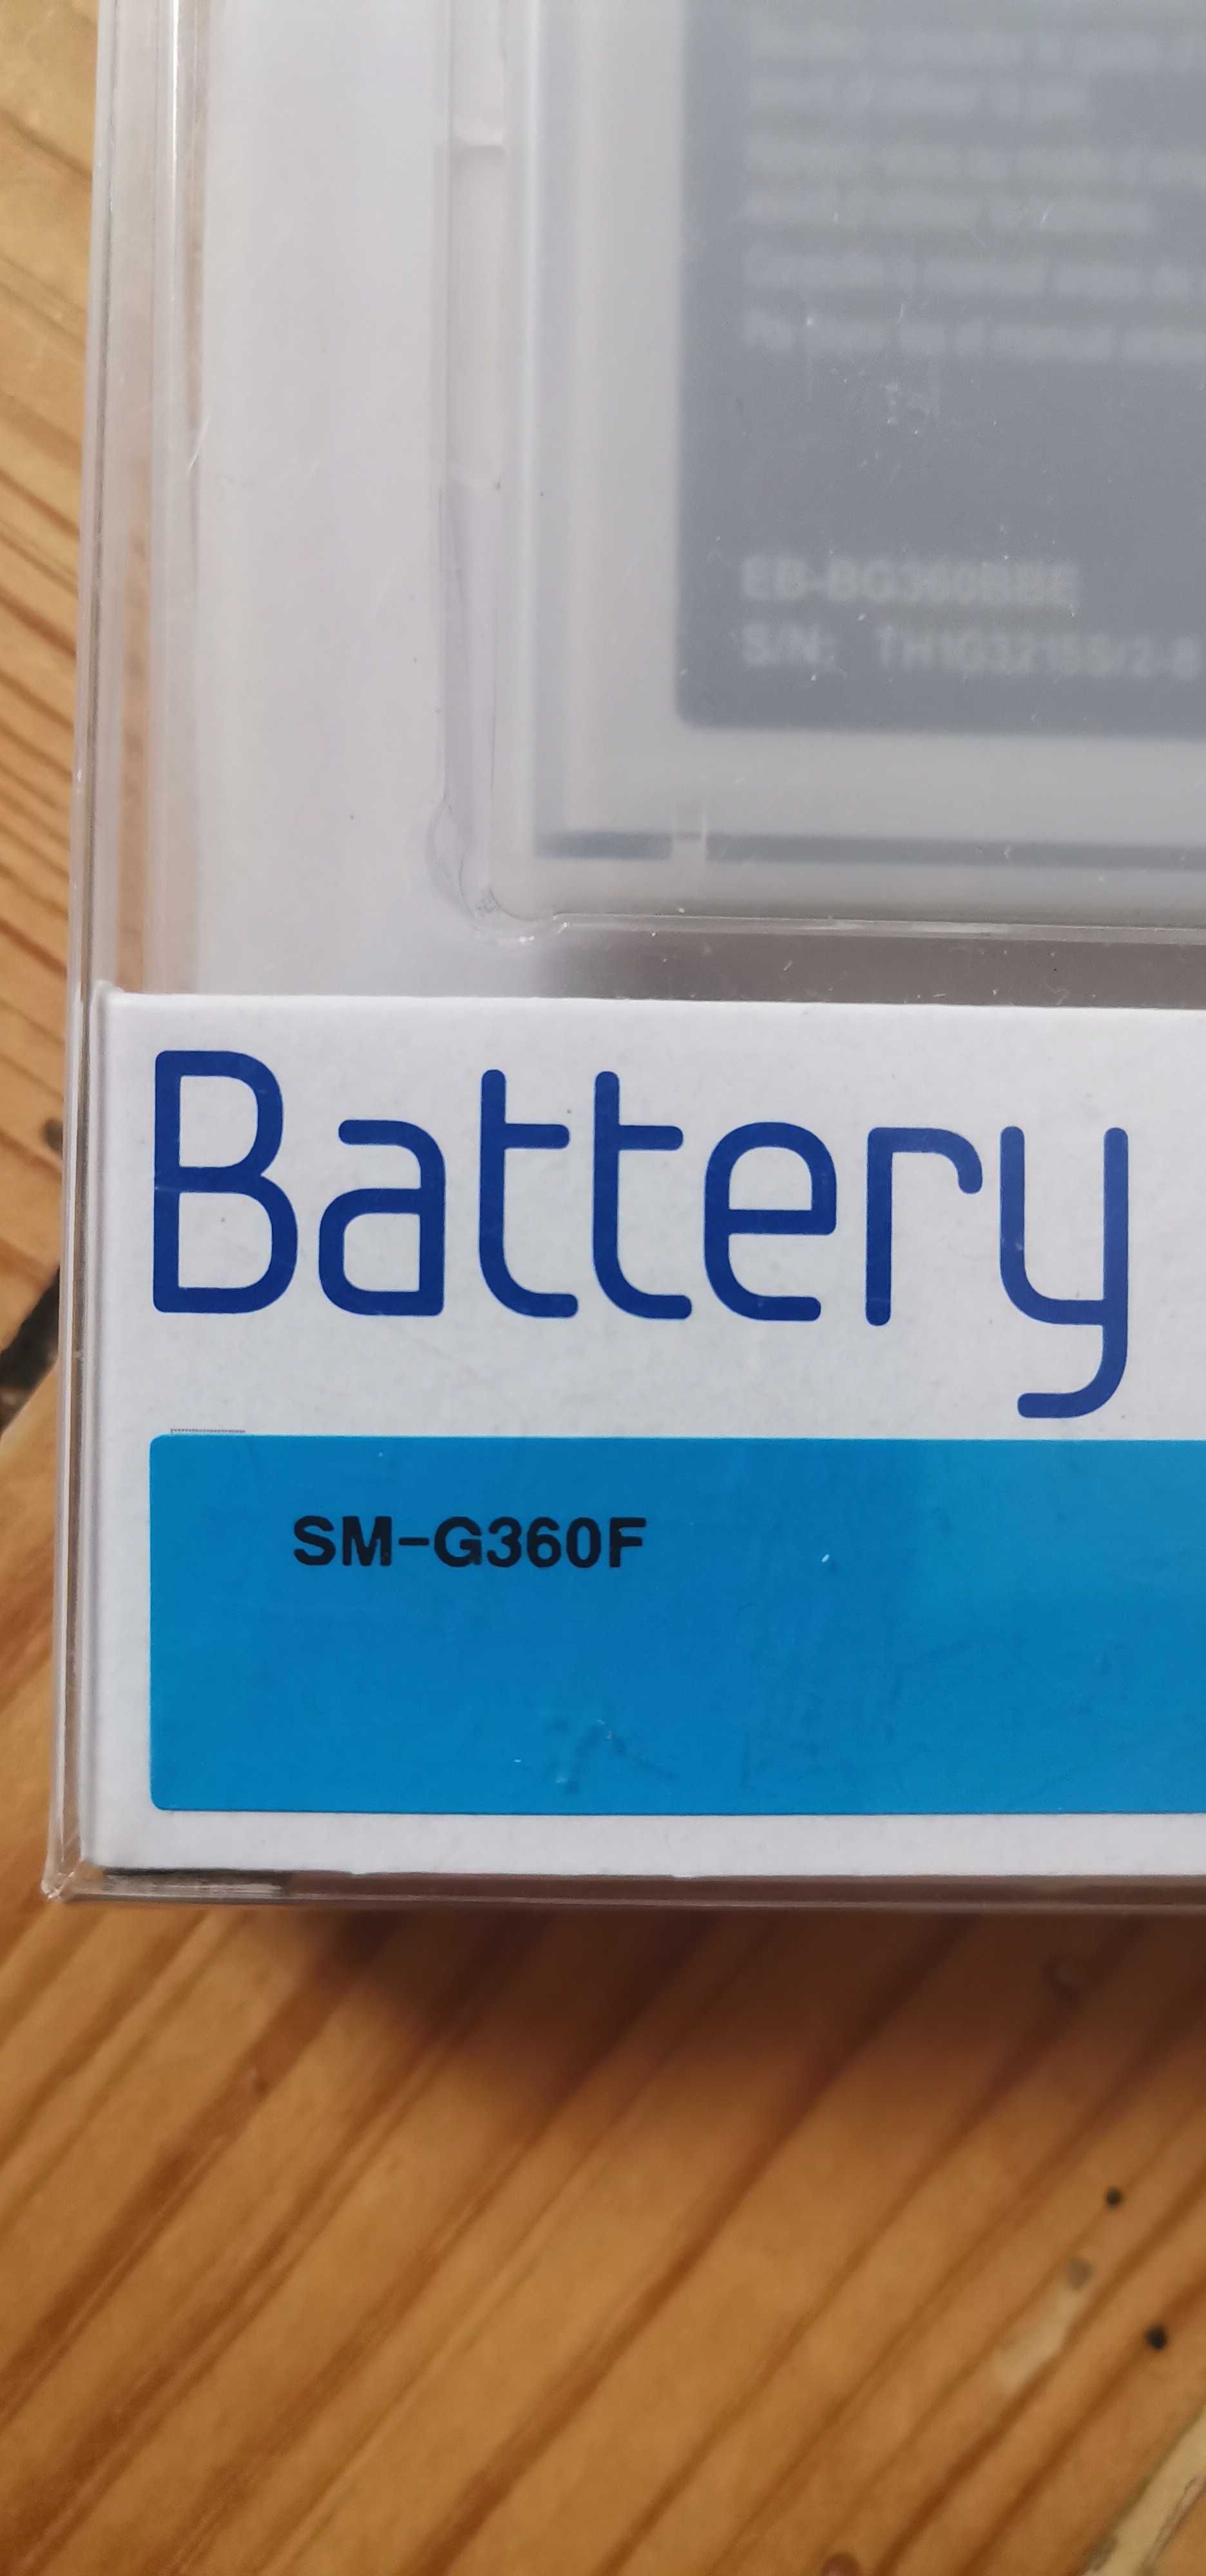 Bateria Samsung Nova selada